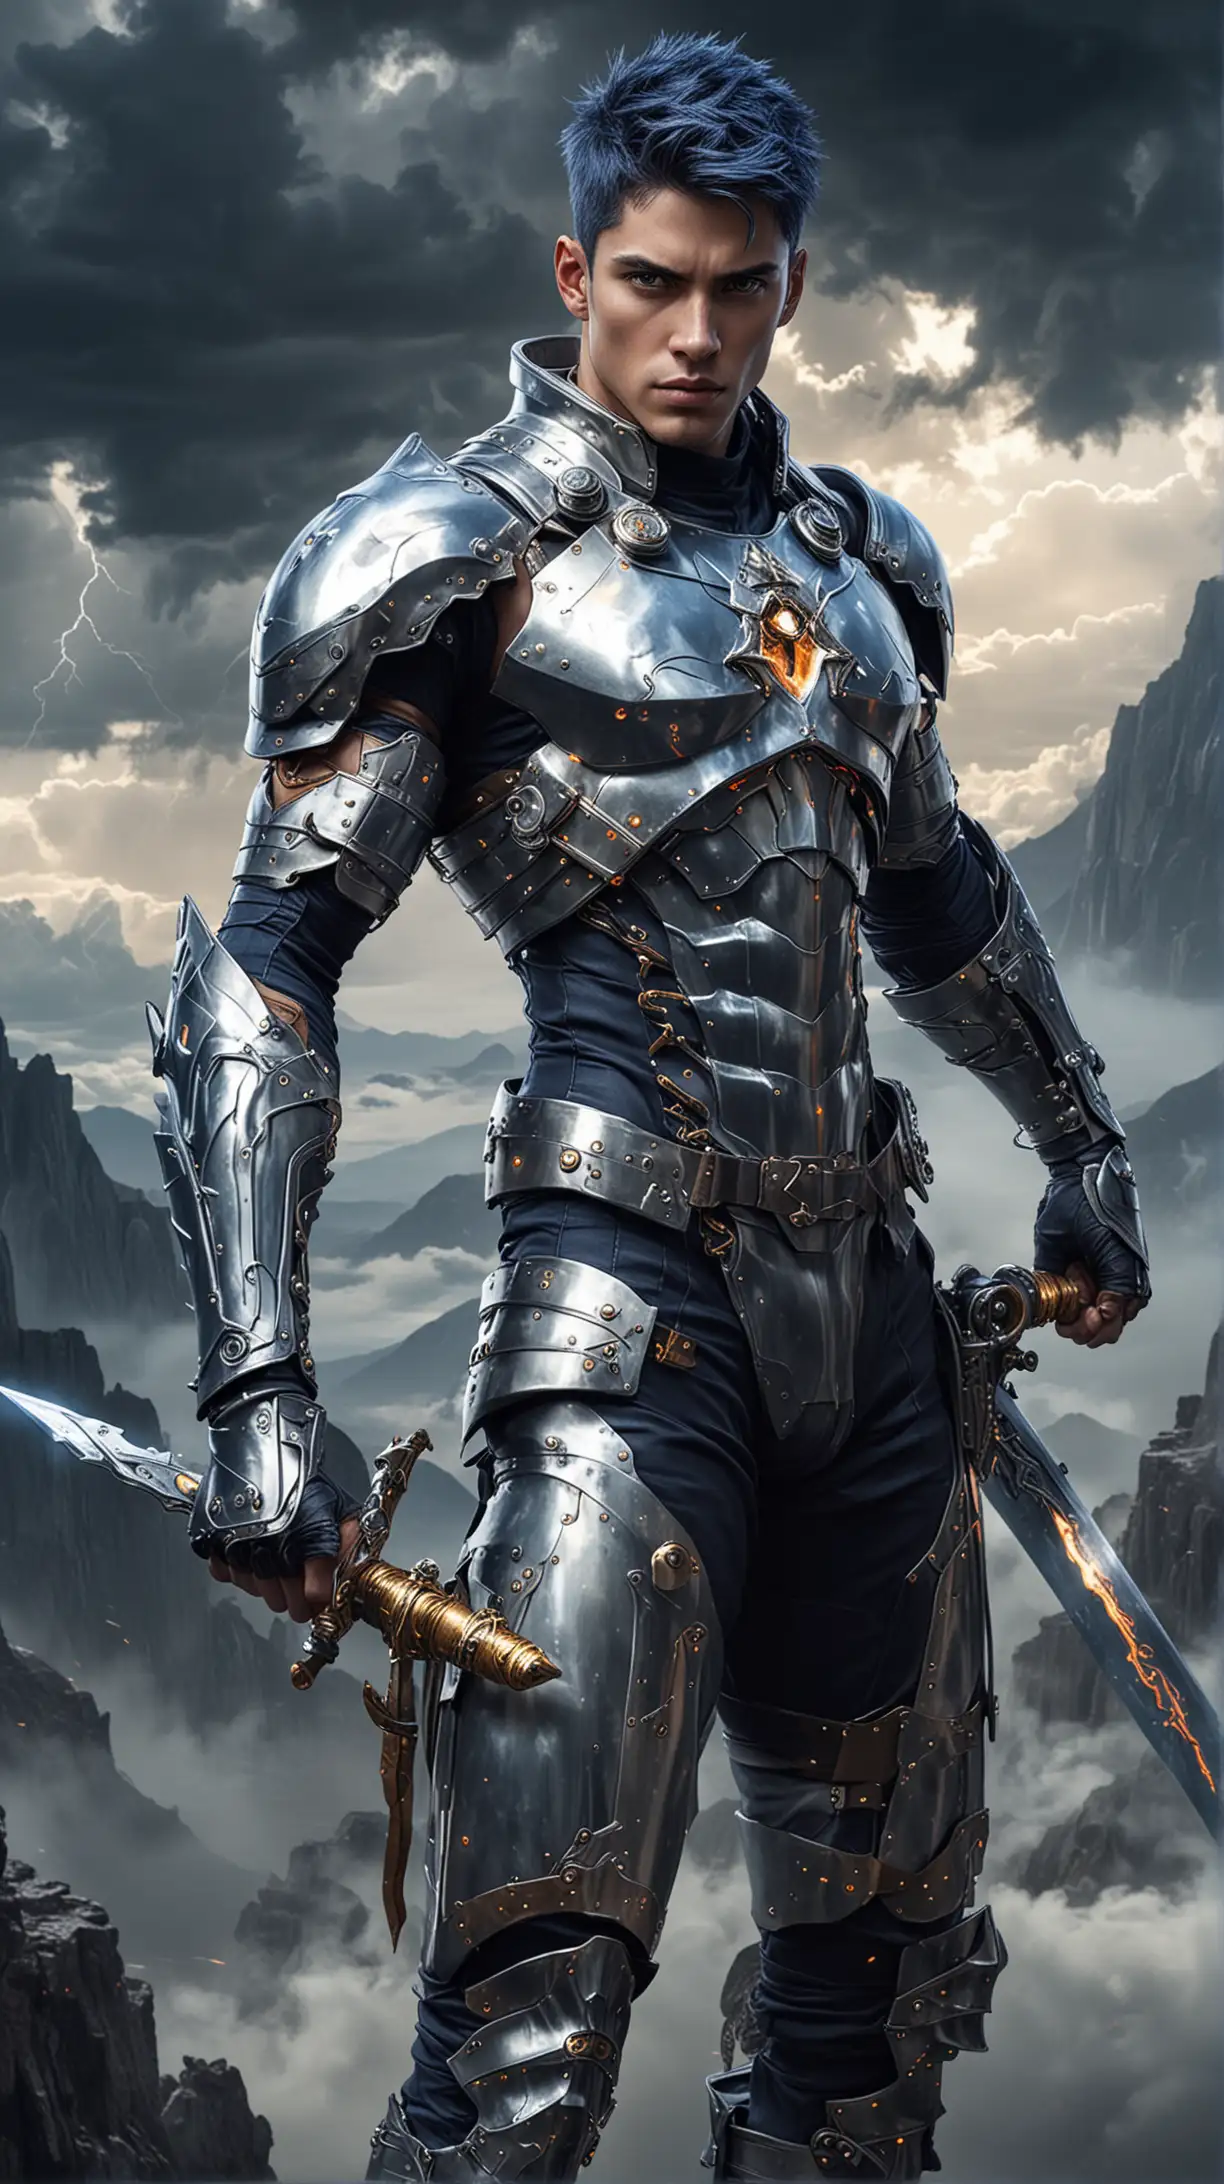 Futuristic Knight with Magic Sword Summoning Lightning